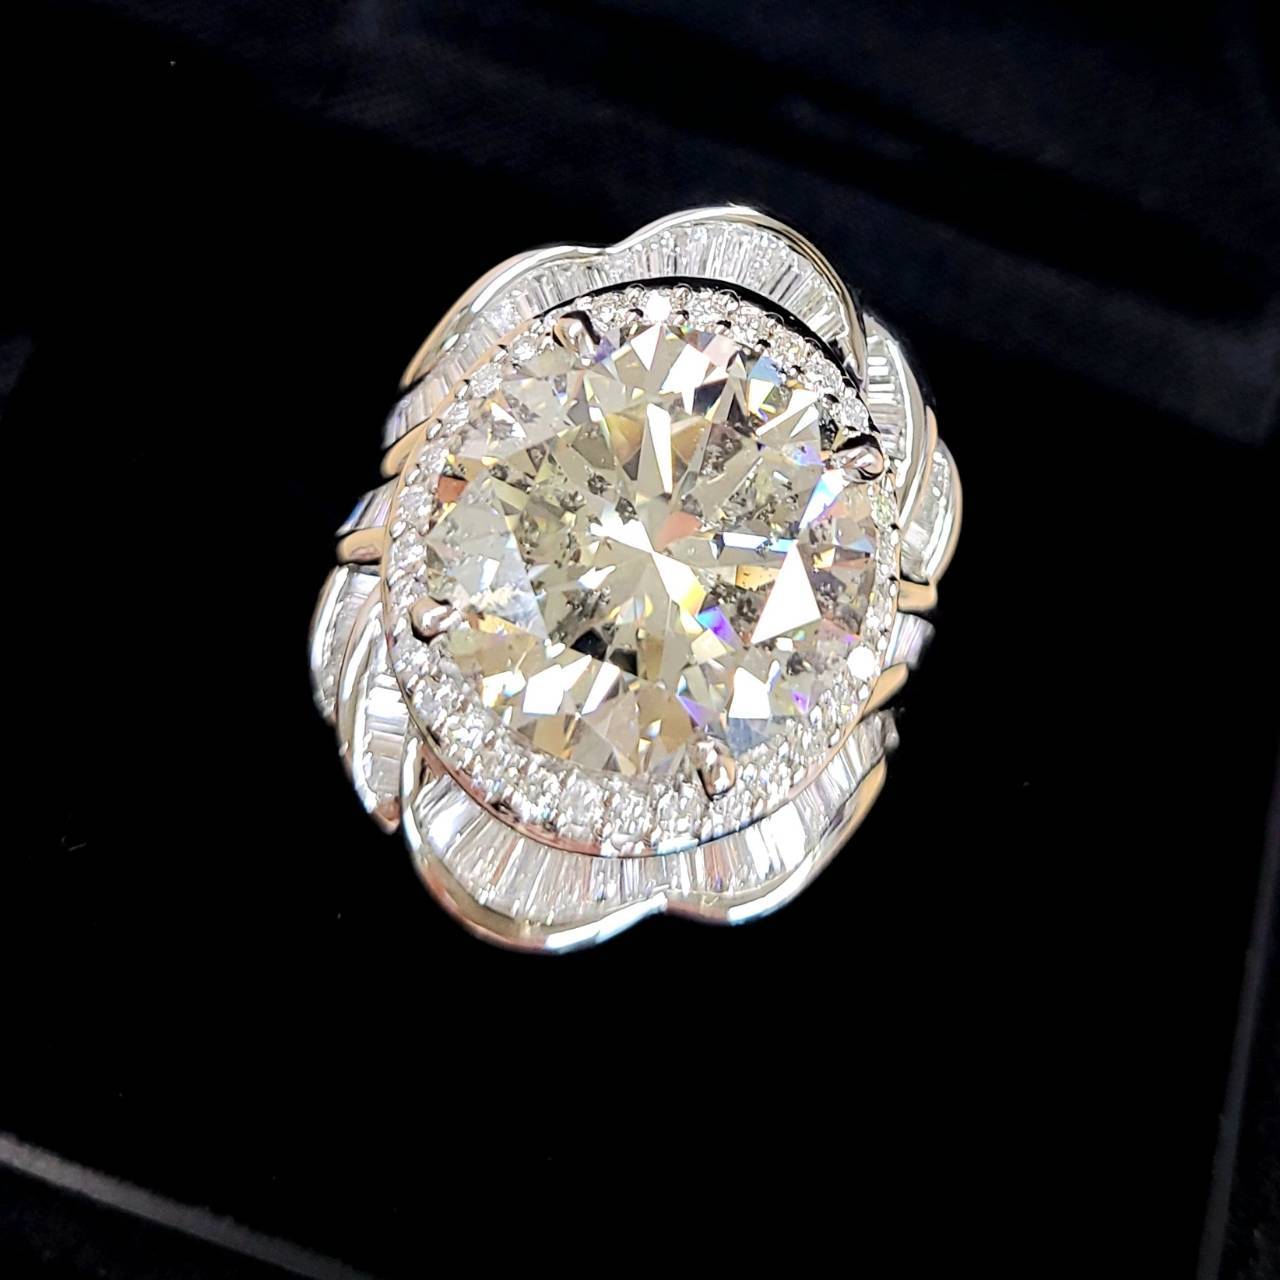 絶対的存在感 12.6ct 天然 ダイヤモンド プラチナ Pt900 リング 指輪 4月誕生石 【中央宝石研究所鑑定書付】